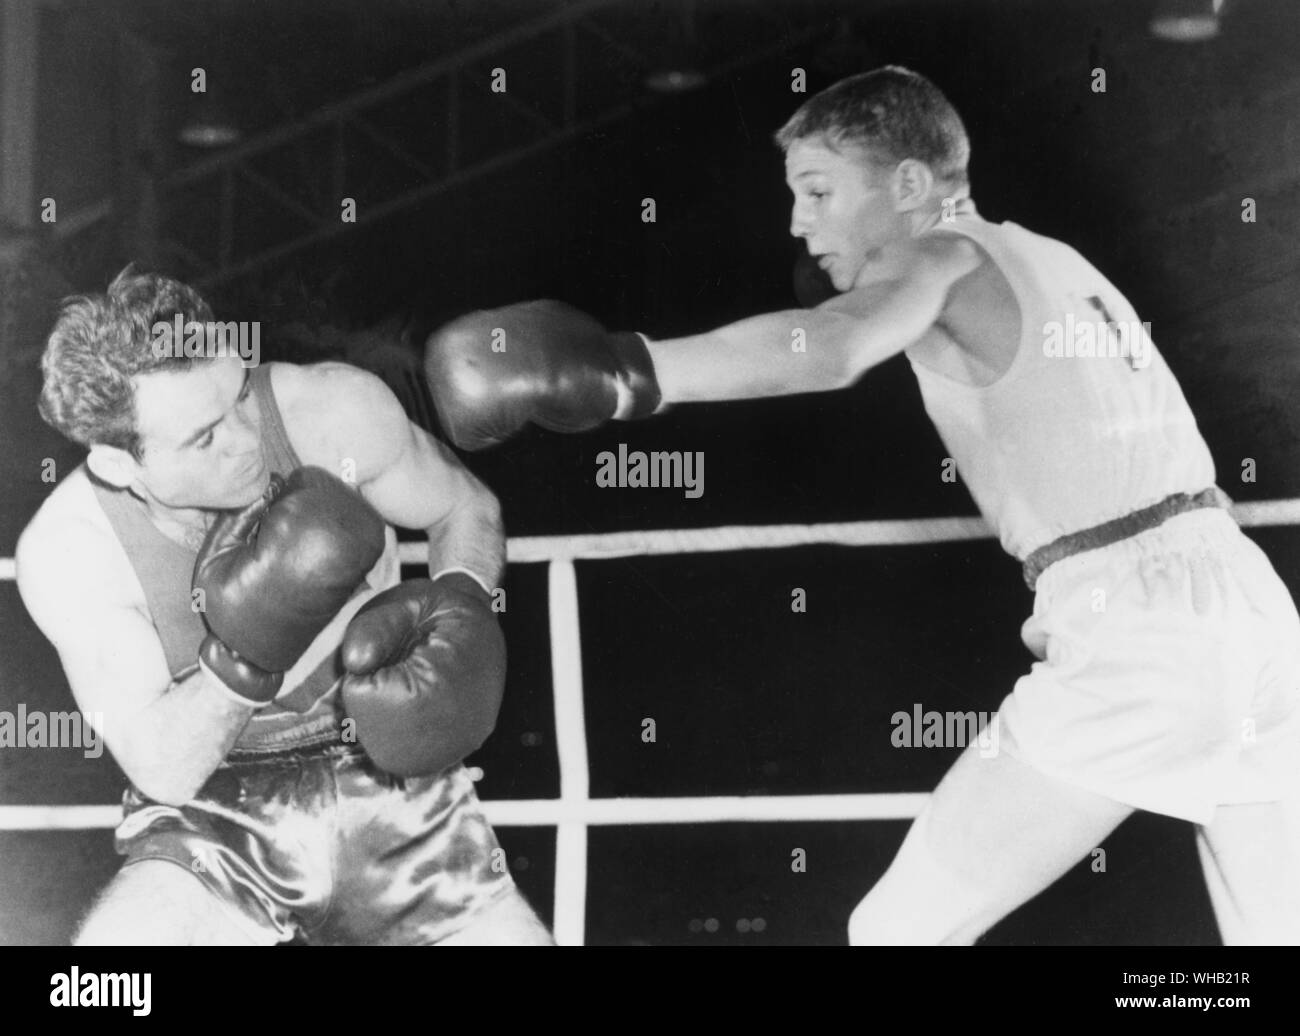 Aus., Melbourne, Olimpiadi, 1956: Terry Spinks, 18 anni londinese, conduce con una sinistra a Mircea Dobrescu della Romania durante il loro peso mosca finale. Spinks ha vinto la medaglia d'oro. Foto Stock